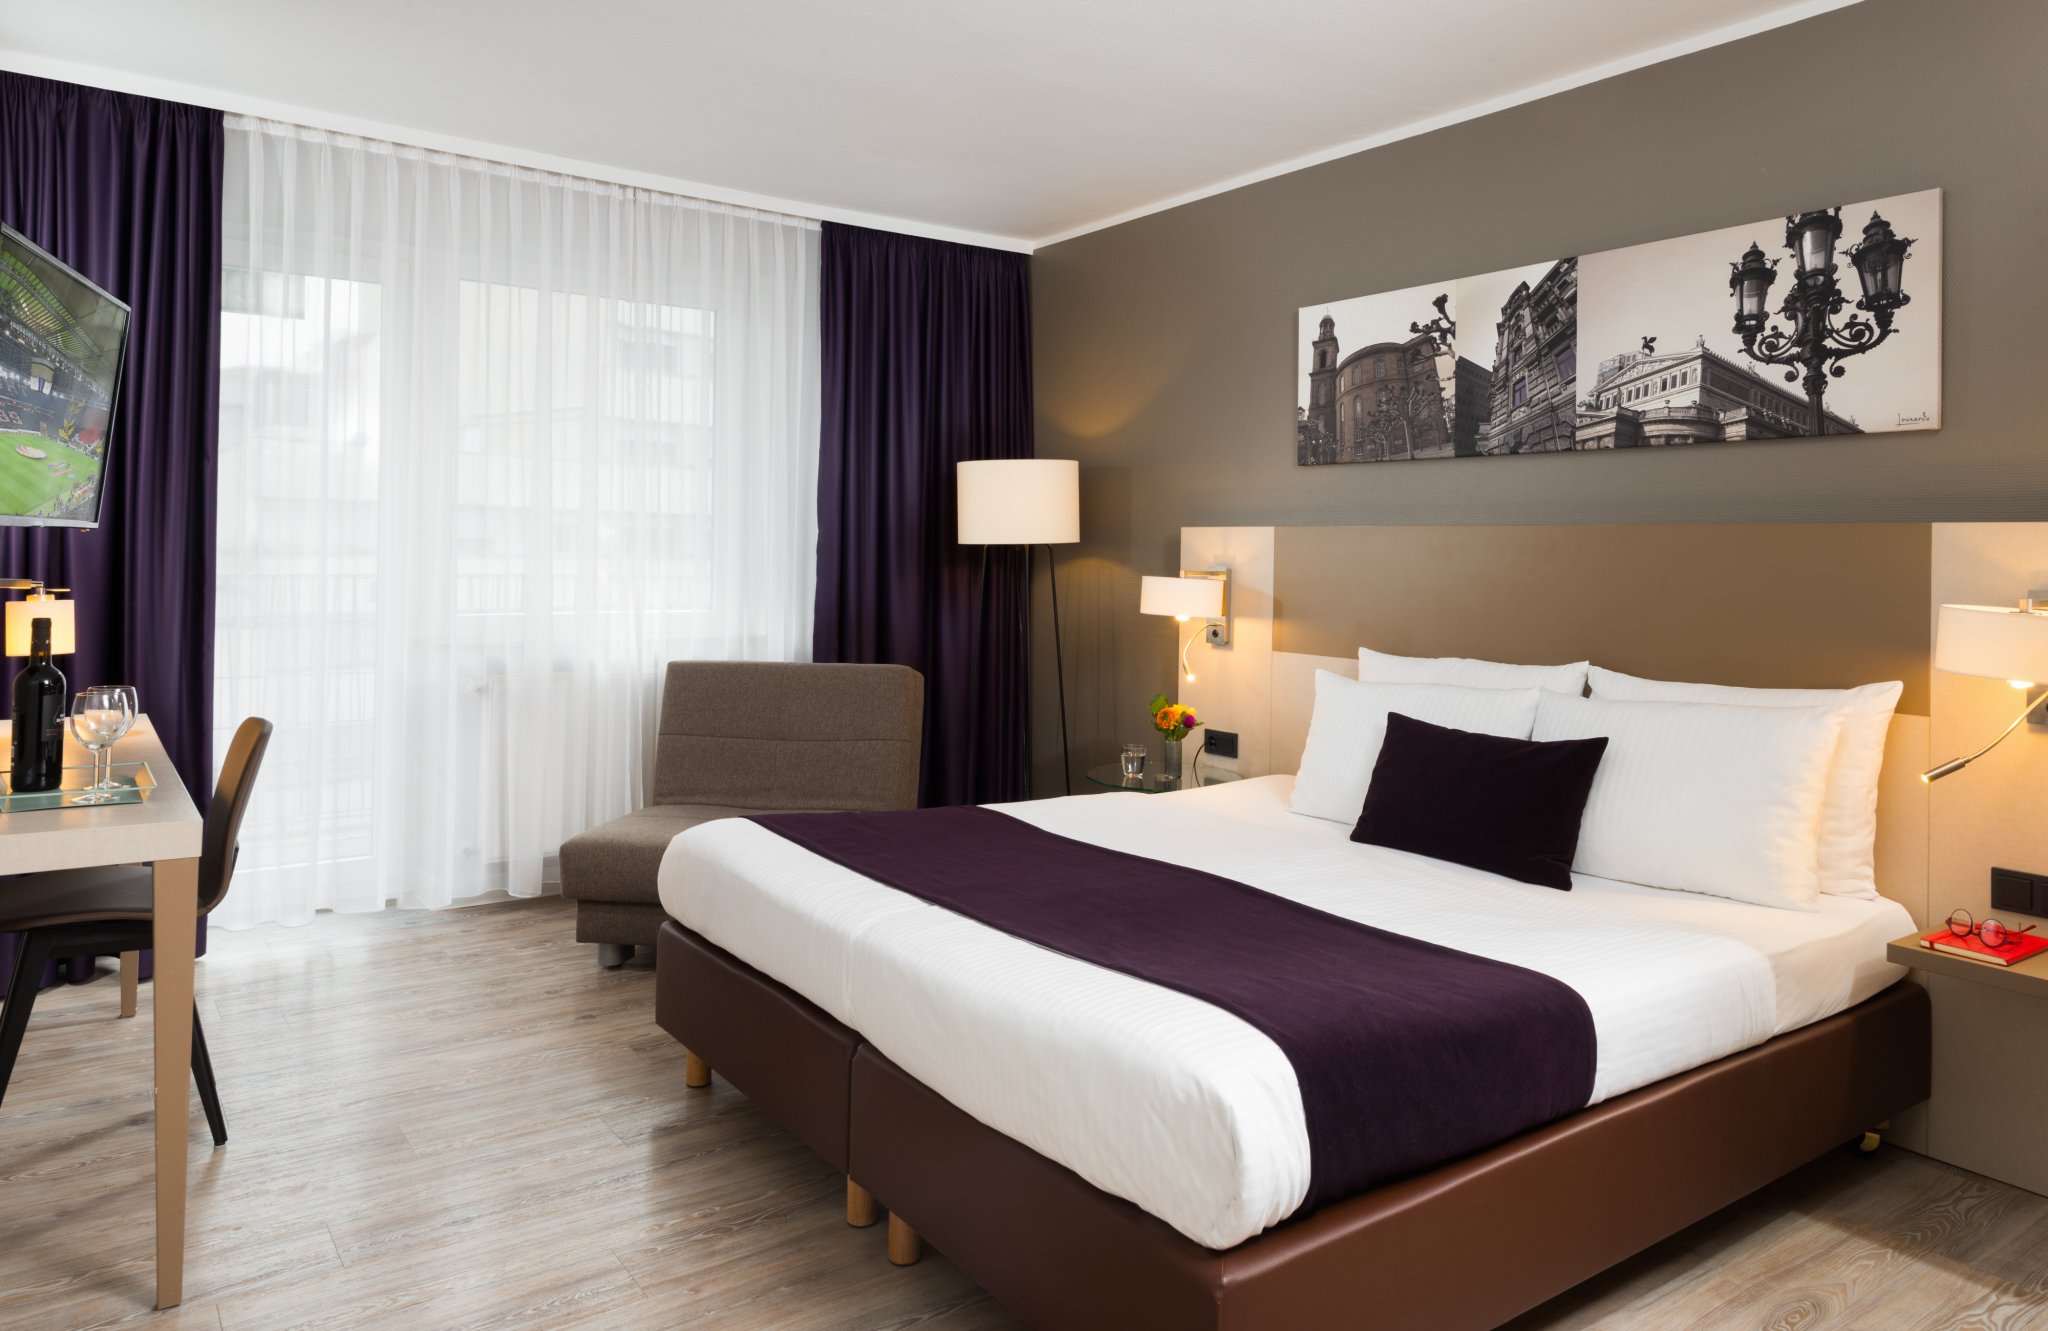 Leonardo Hotel Frankfurt City Center - Comfort Room